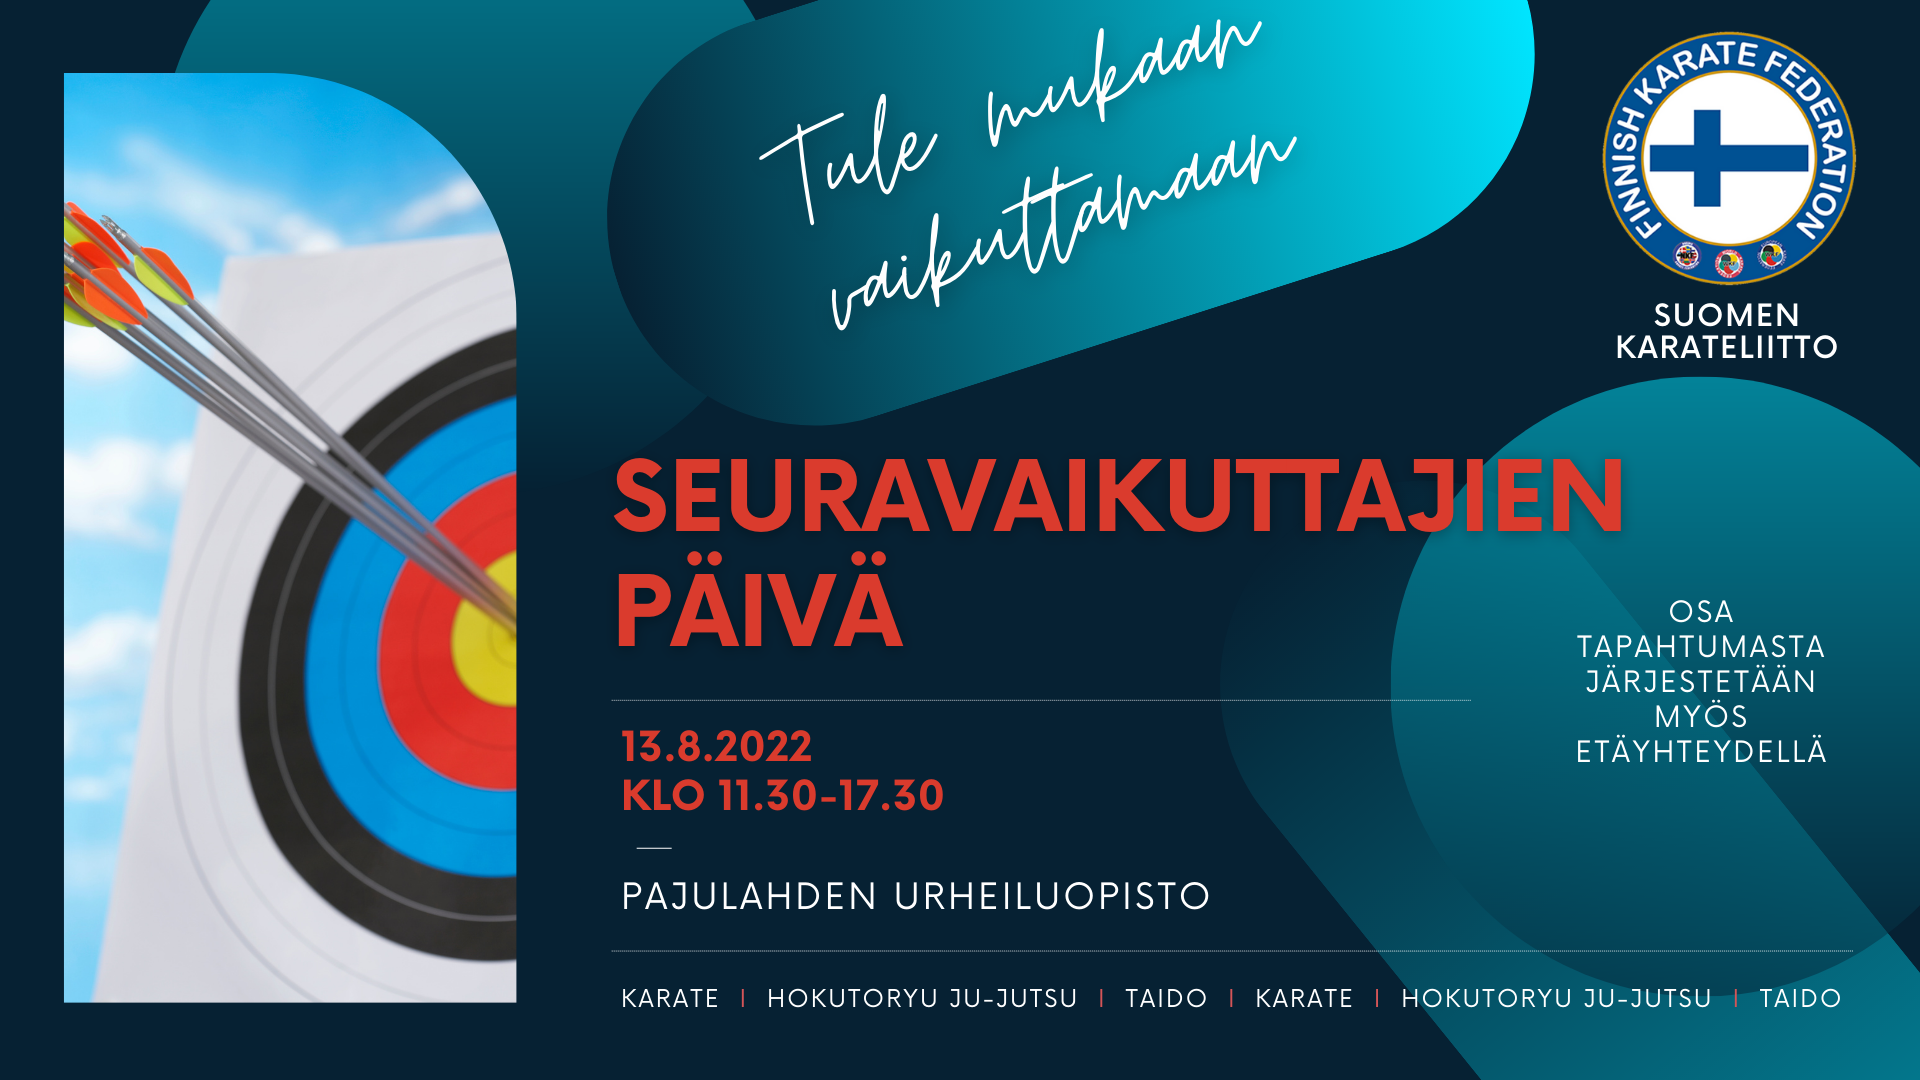 Seuravaikuttajien päivä - Suomen Karateliitto ry